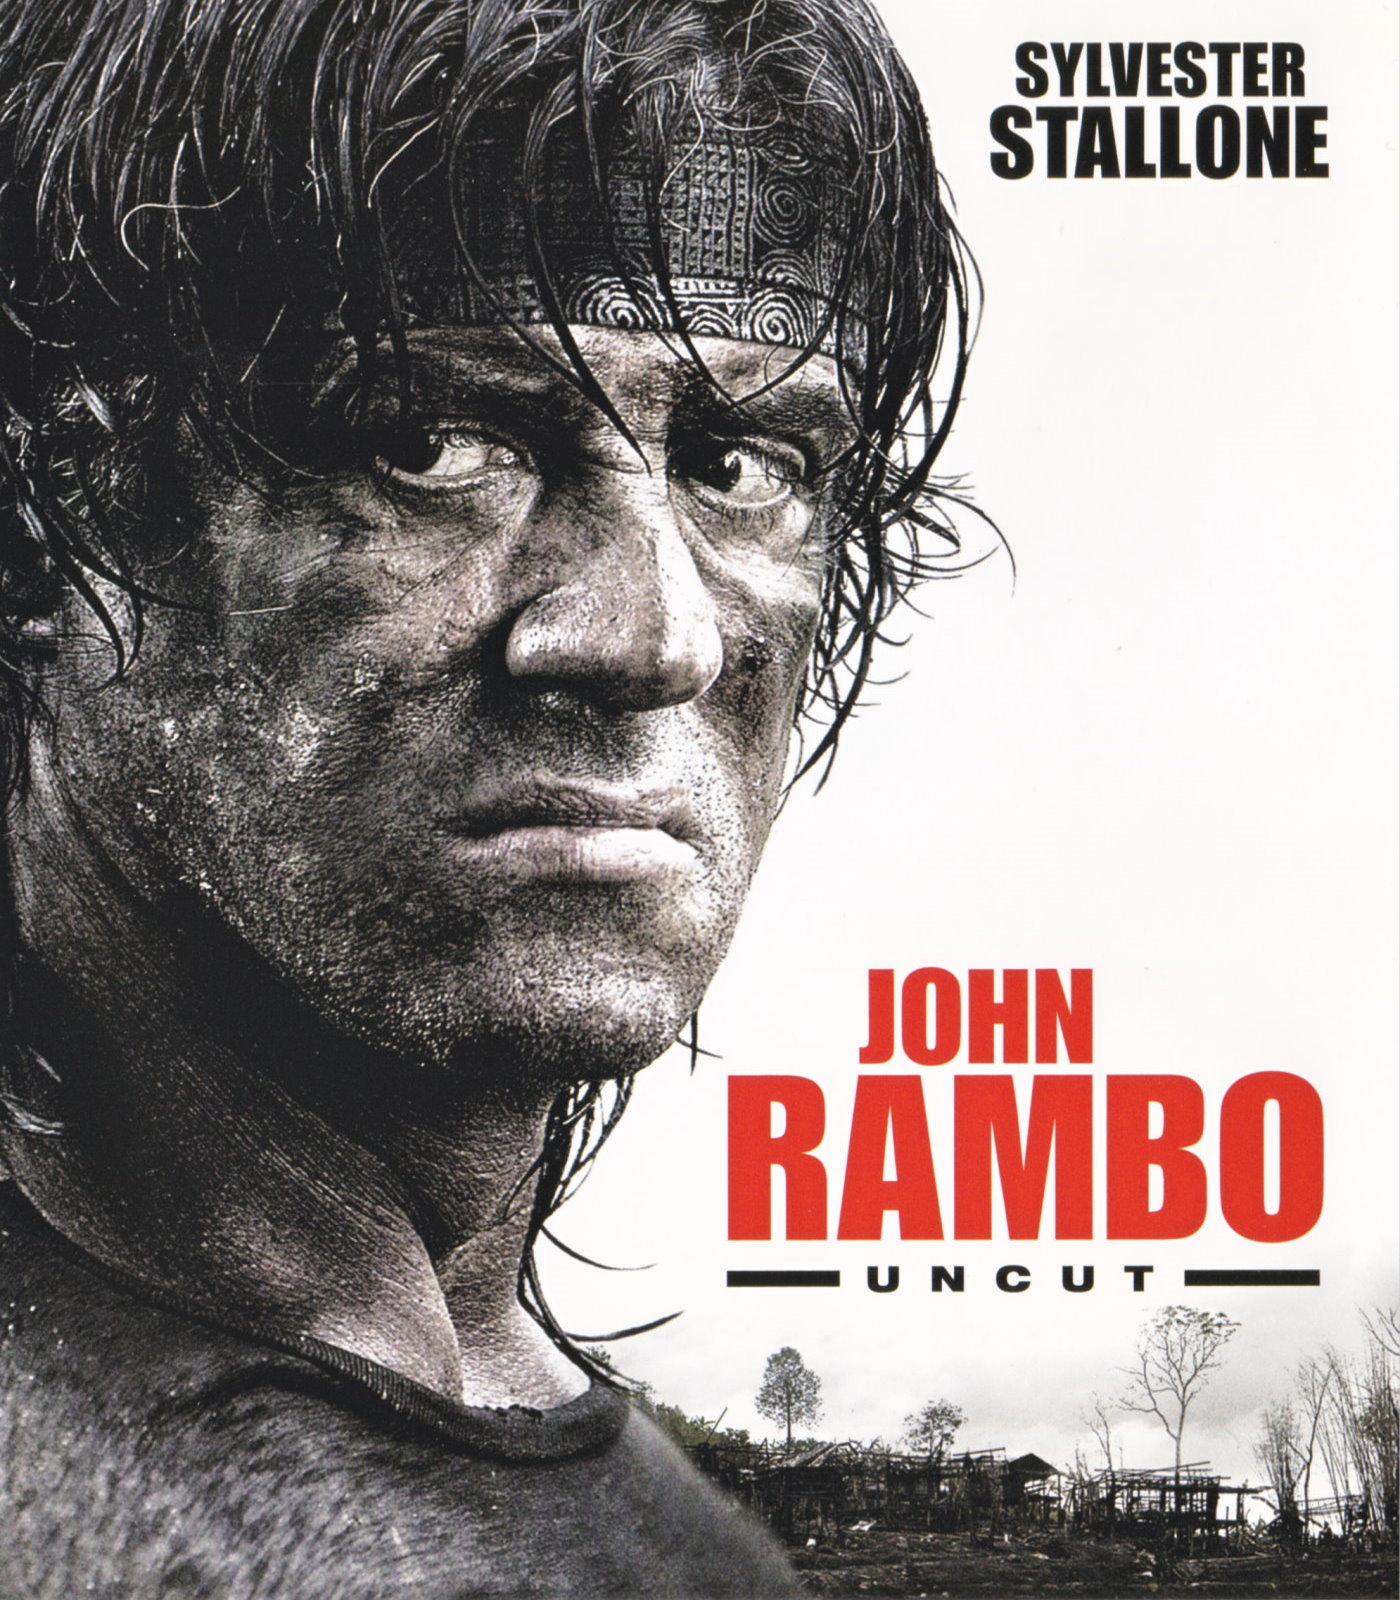 Cover - John Rambo.jpg